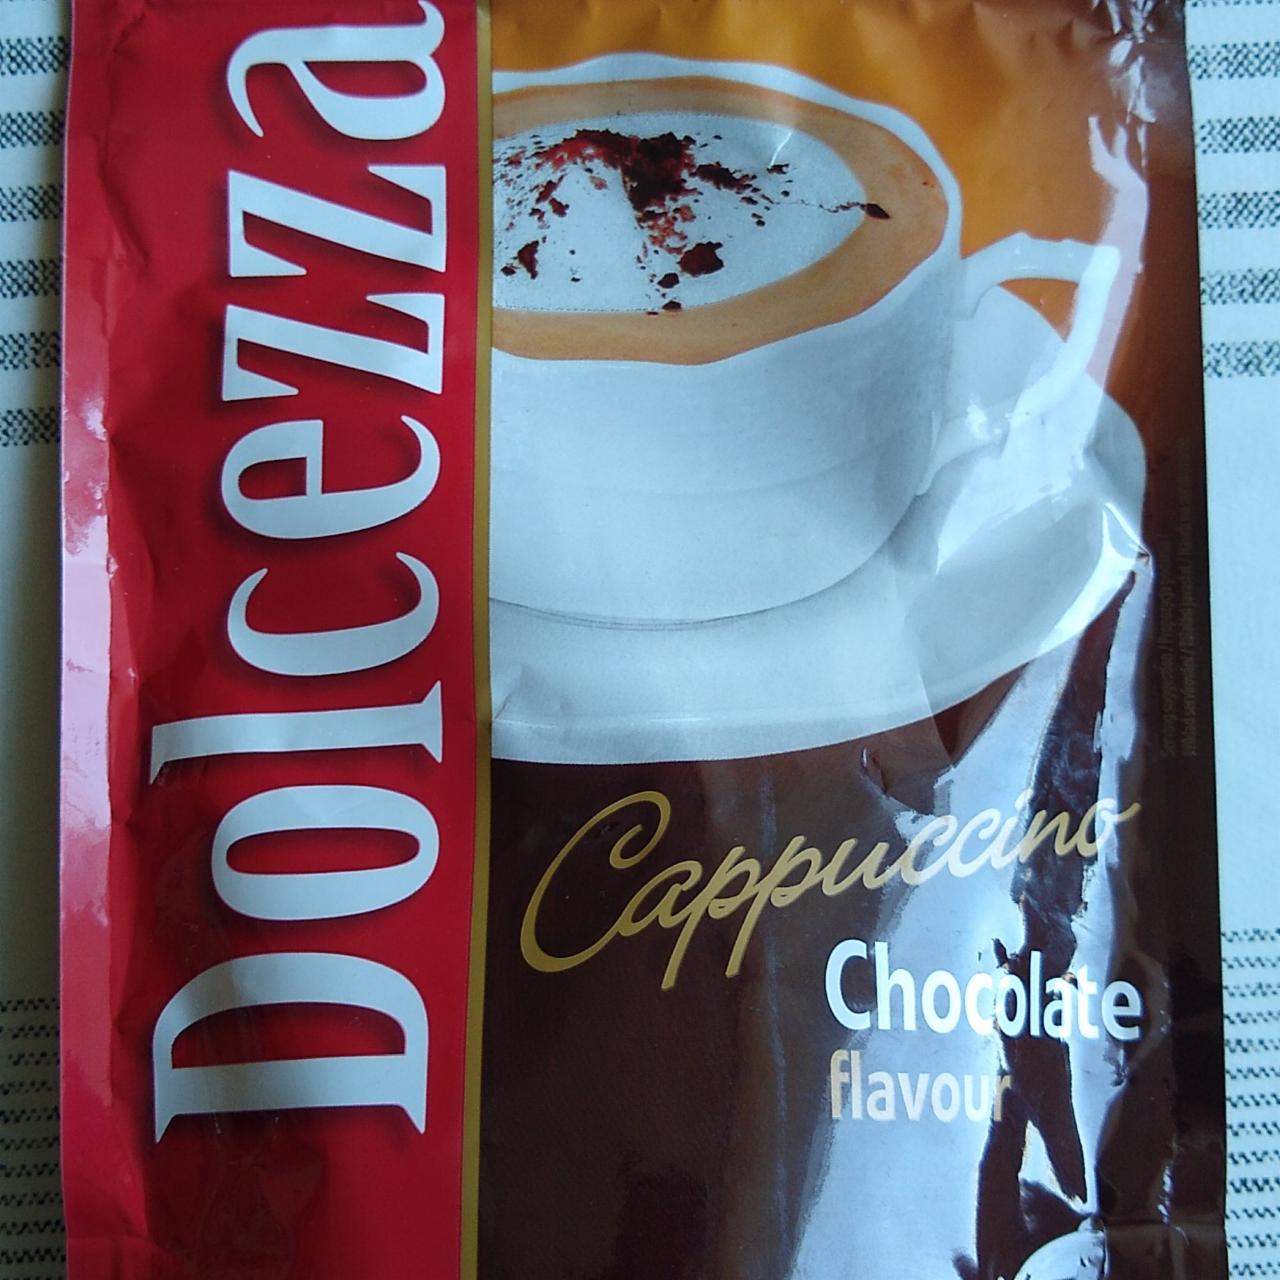 Fotografie - Cappuccino Chocolate flavour Dolcezza